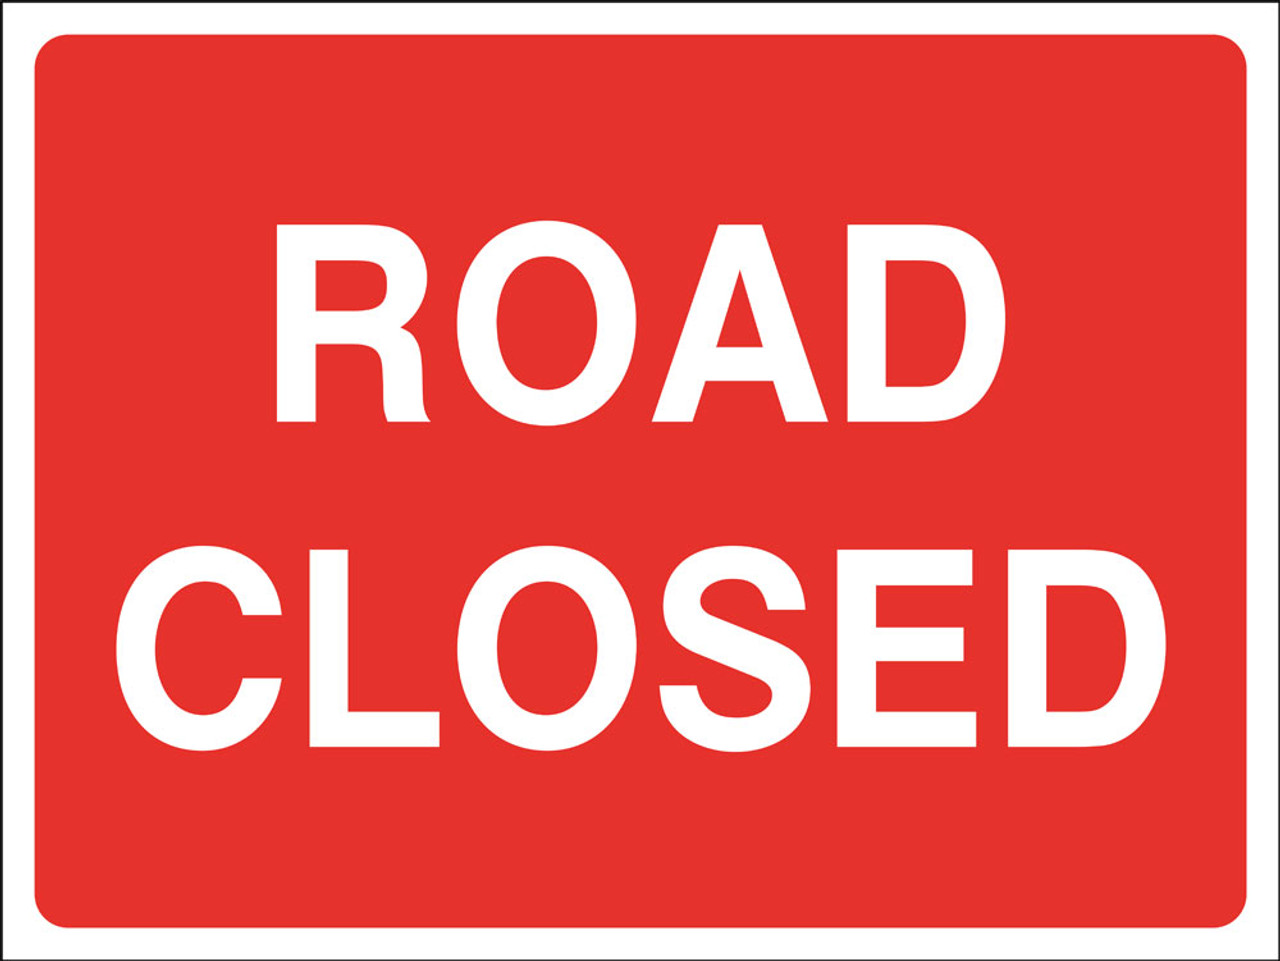 Road closed 